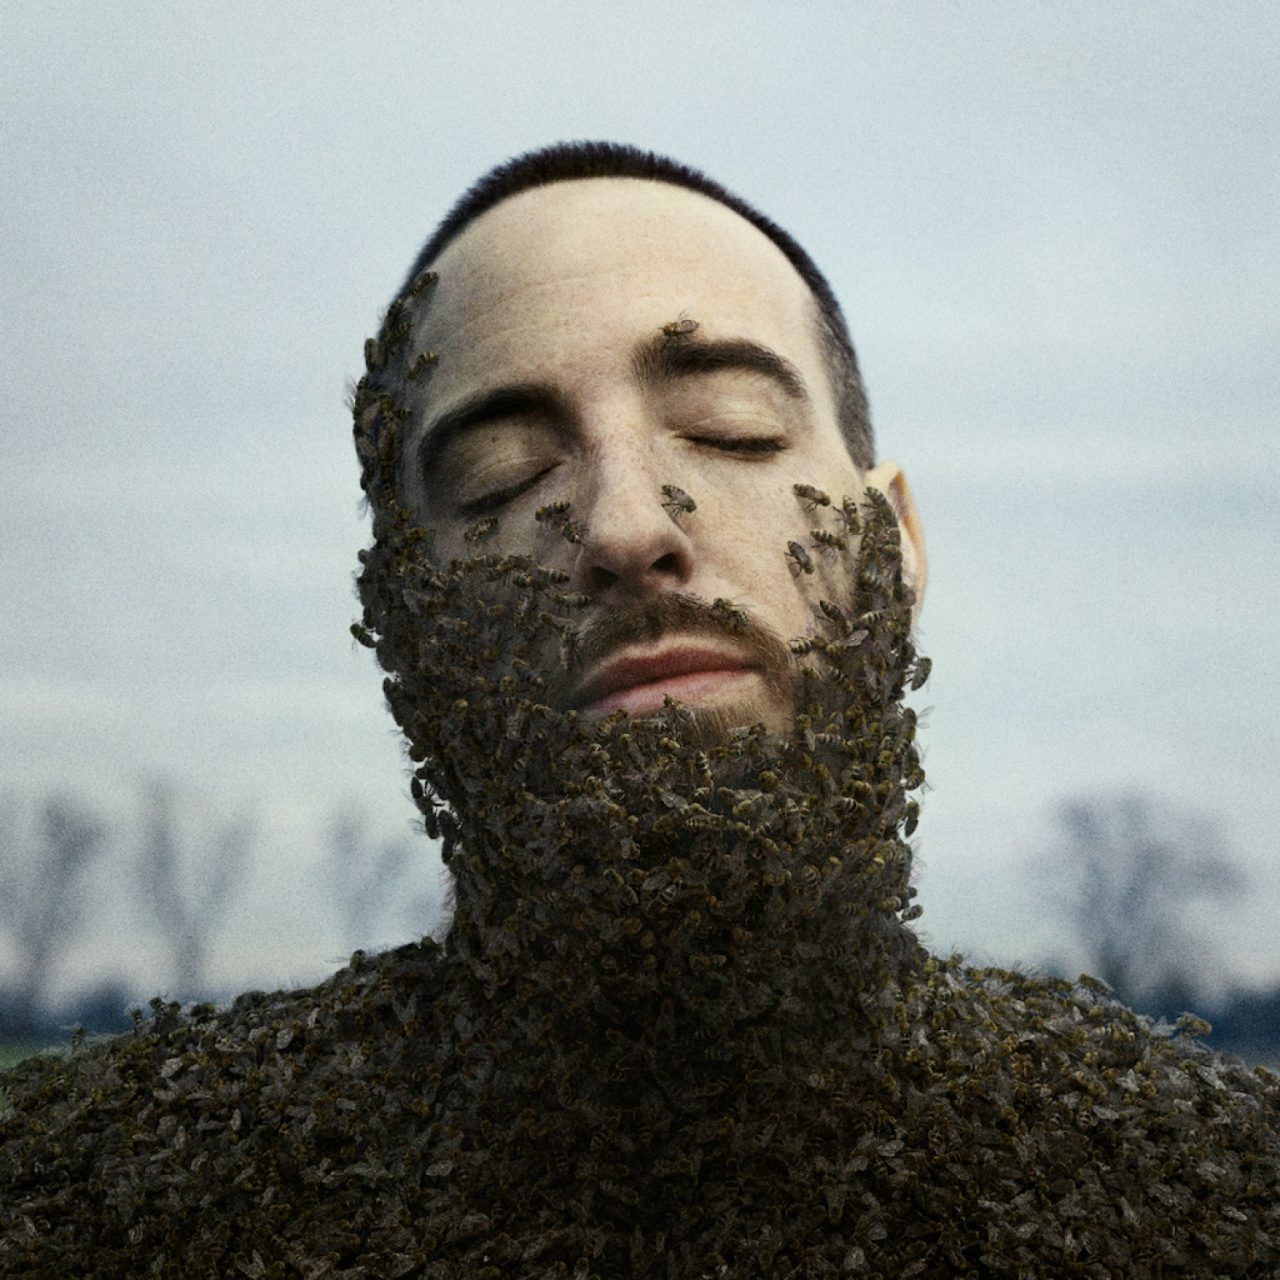 Das Albumcover "Alles war schön und nichts tat weh" von Casper zeigt den Musiker im Porträt. Er hat die Augen geschlossen und auf seinem Körper befinden sich Tausende Bienen.